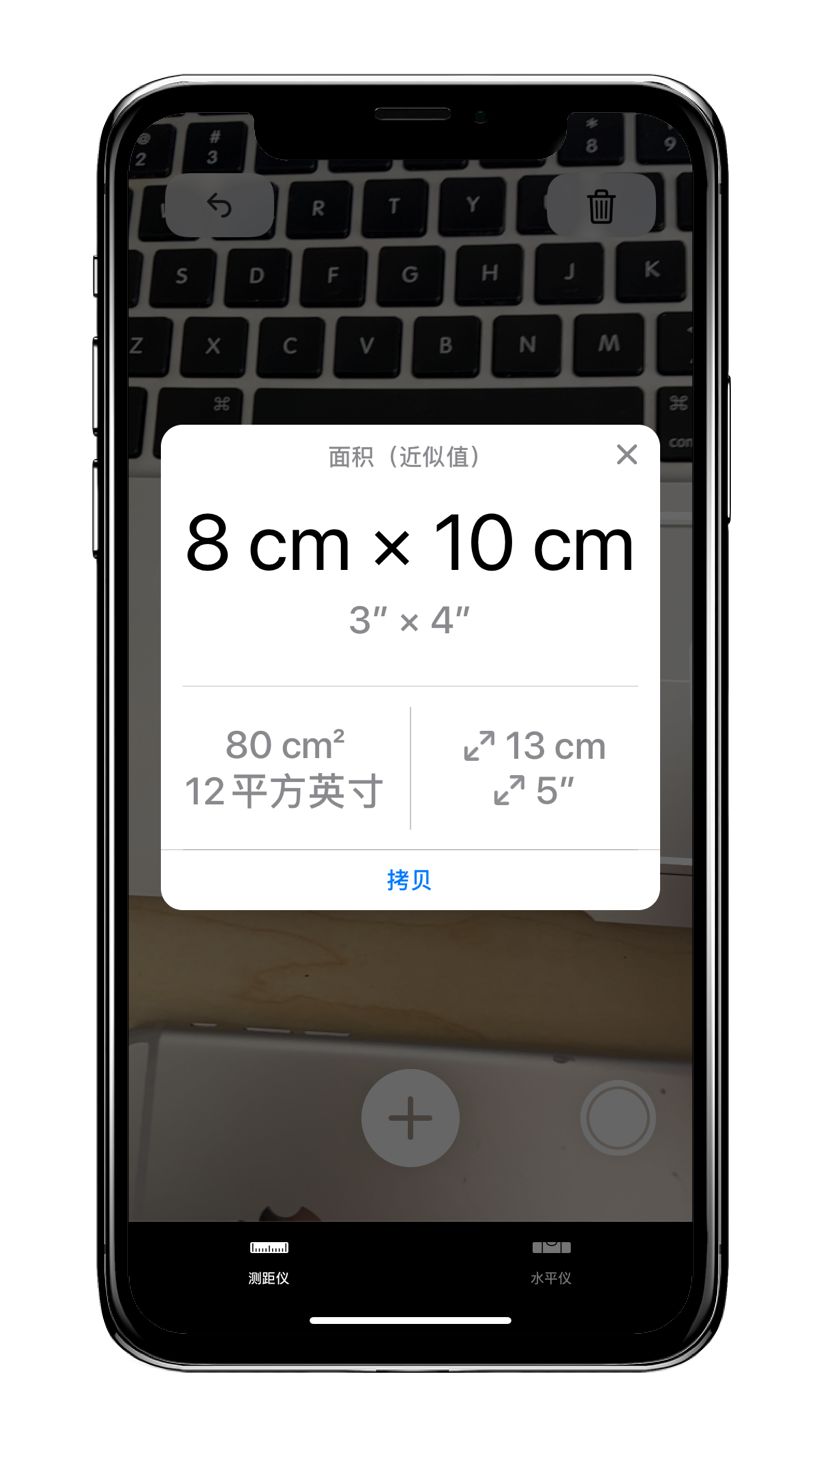 实用又好玩,如何使用 iphone 自带的 ar 尺子?